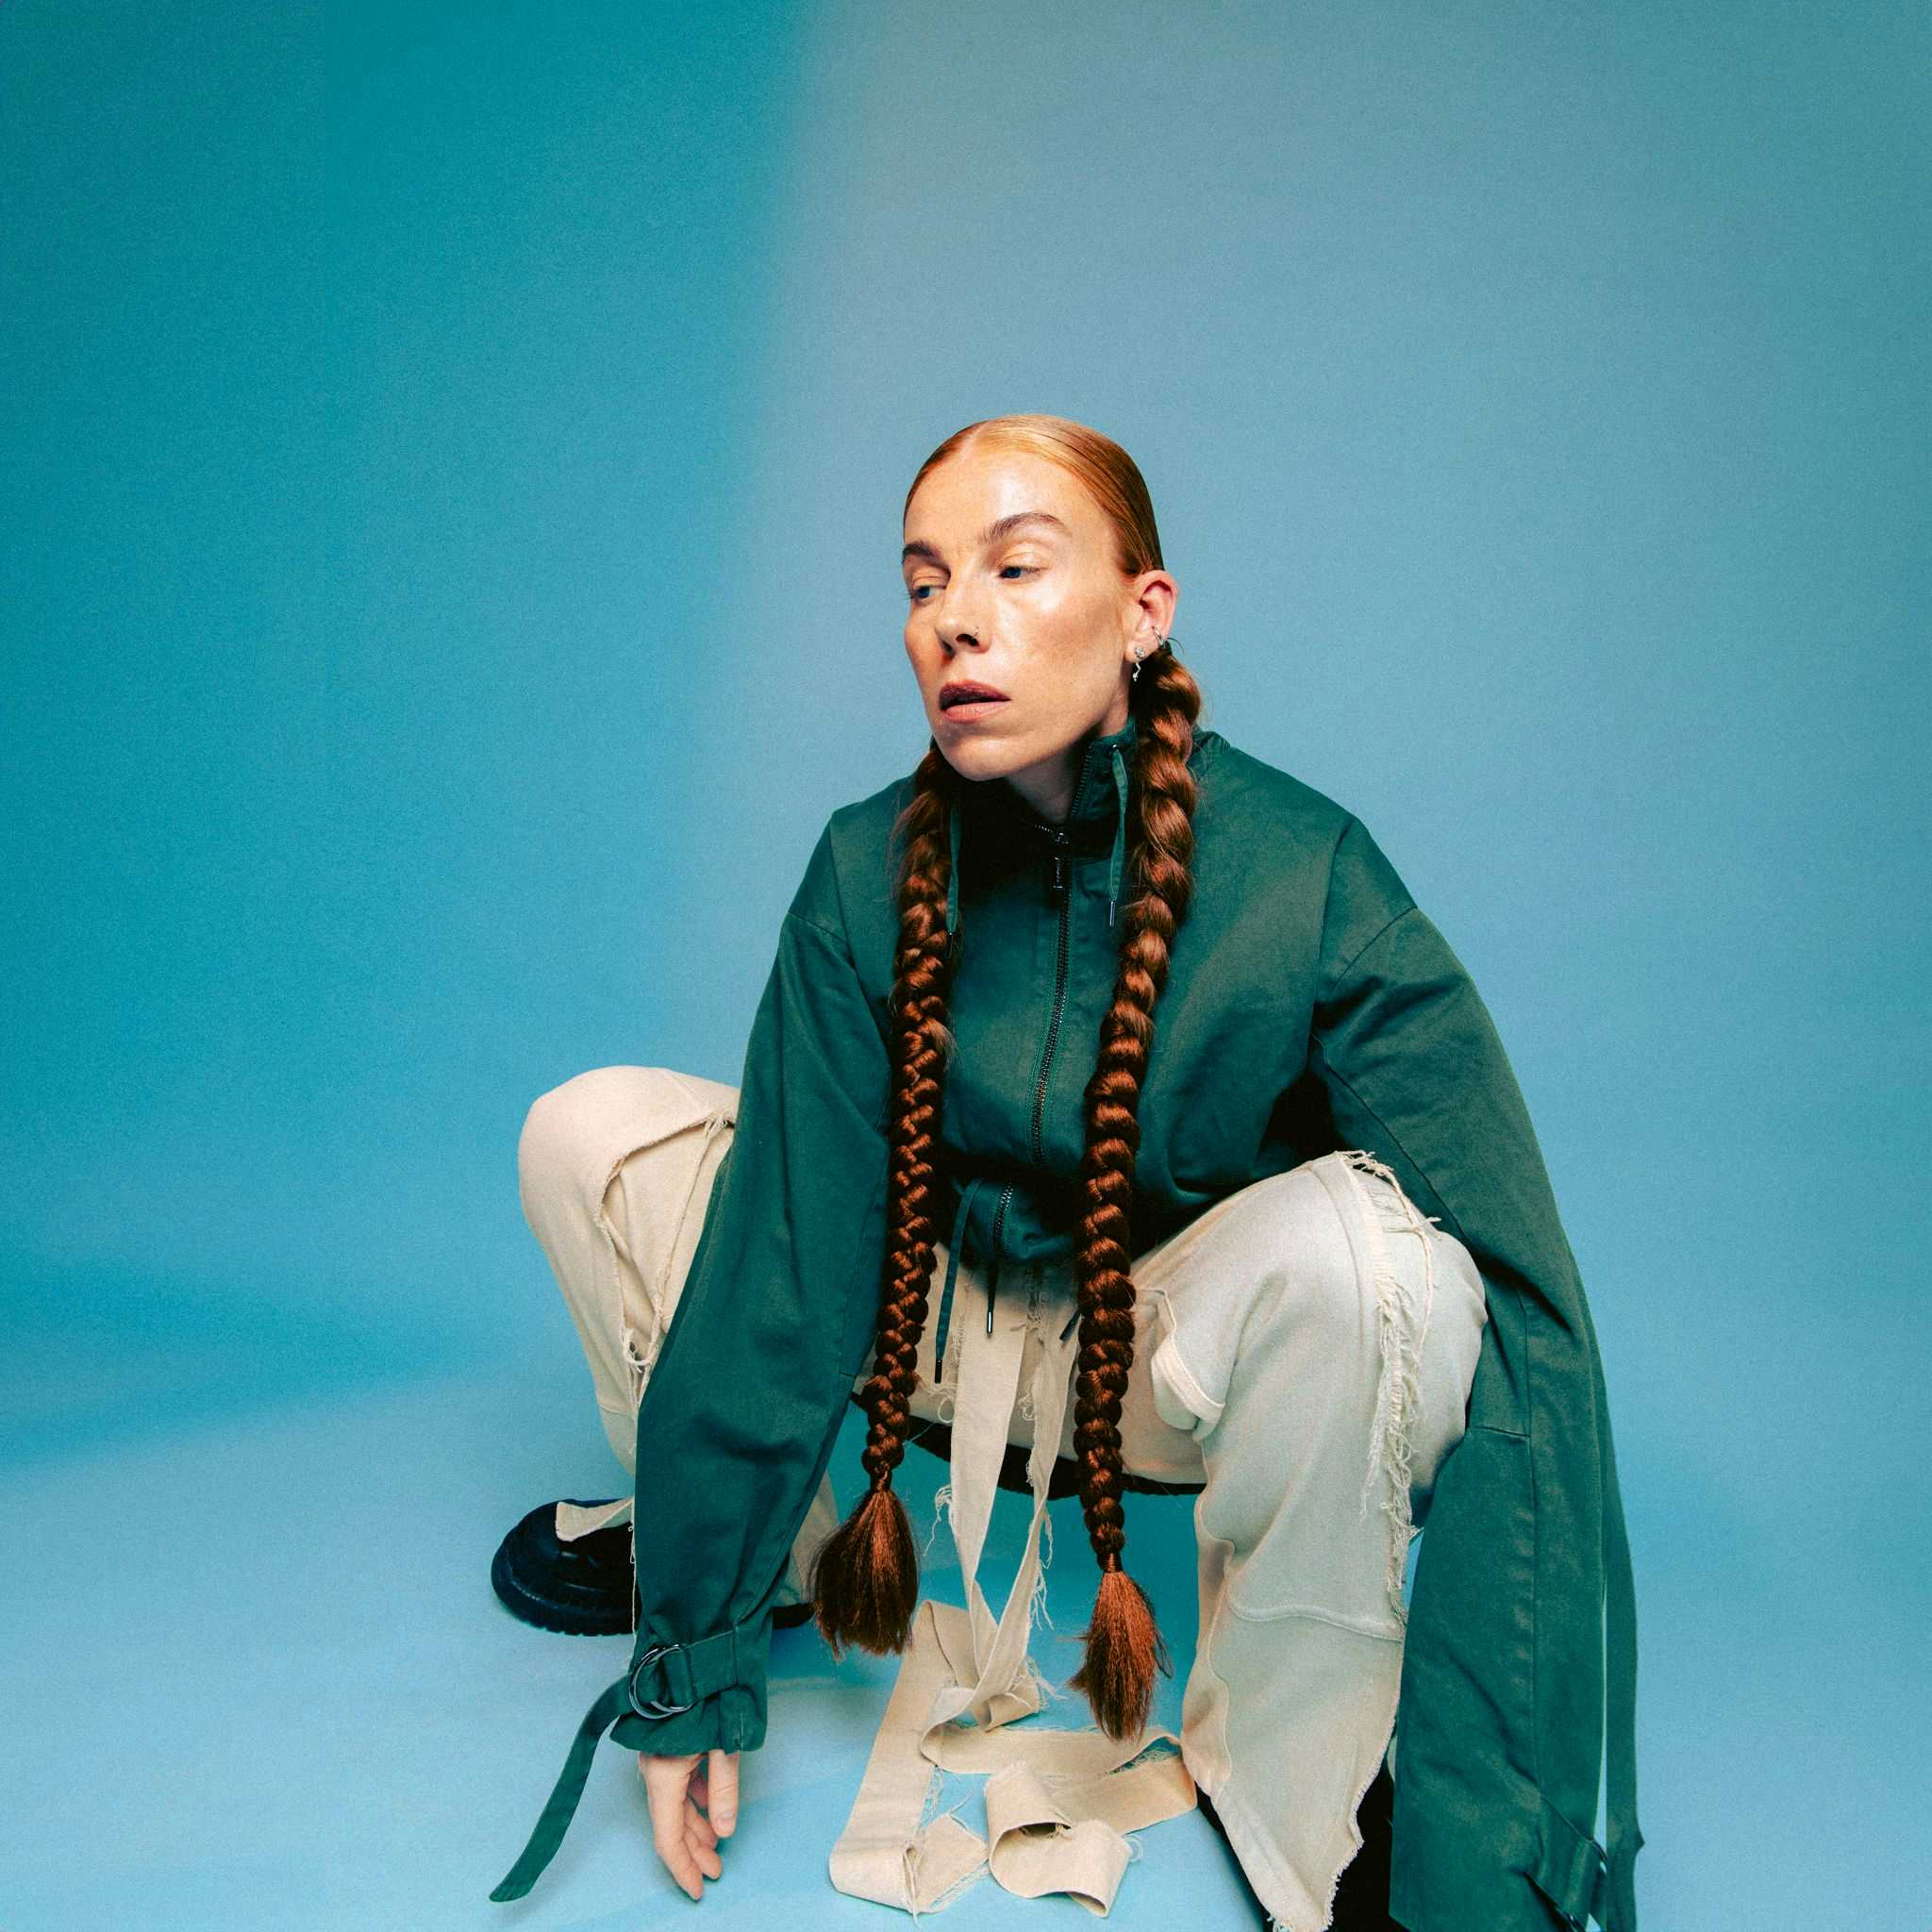 Bilde av artisten Gabrielle som sitter på huk mot blå bakgrunn